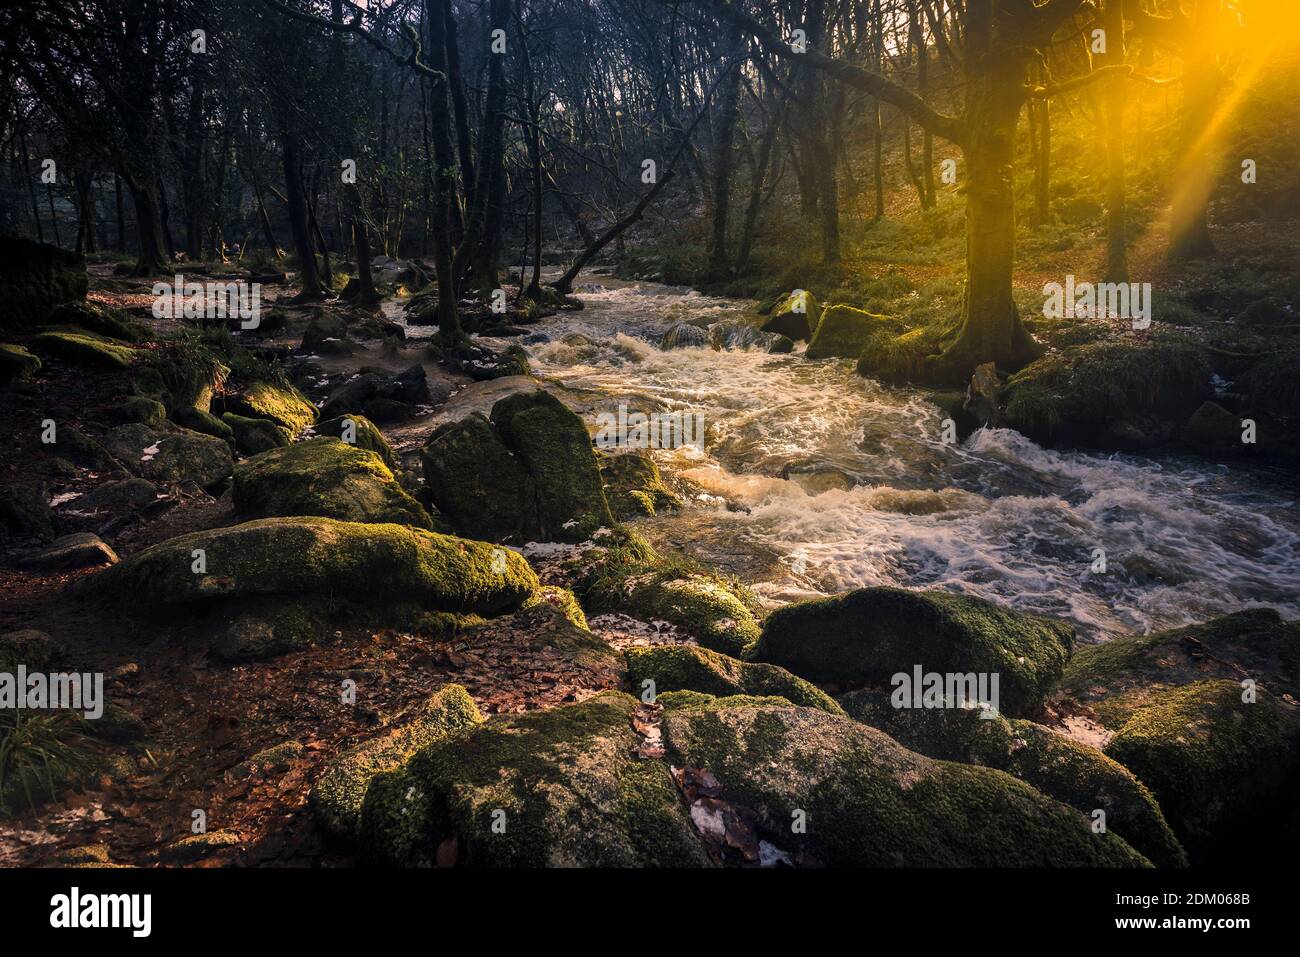 Nel tardo pomeriggio luce del sole mentre il fiume Fowey scorre lungo Golitha Falls nello storico e antico bosco Draynes Wood in Cornovaglia. Foto Stock